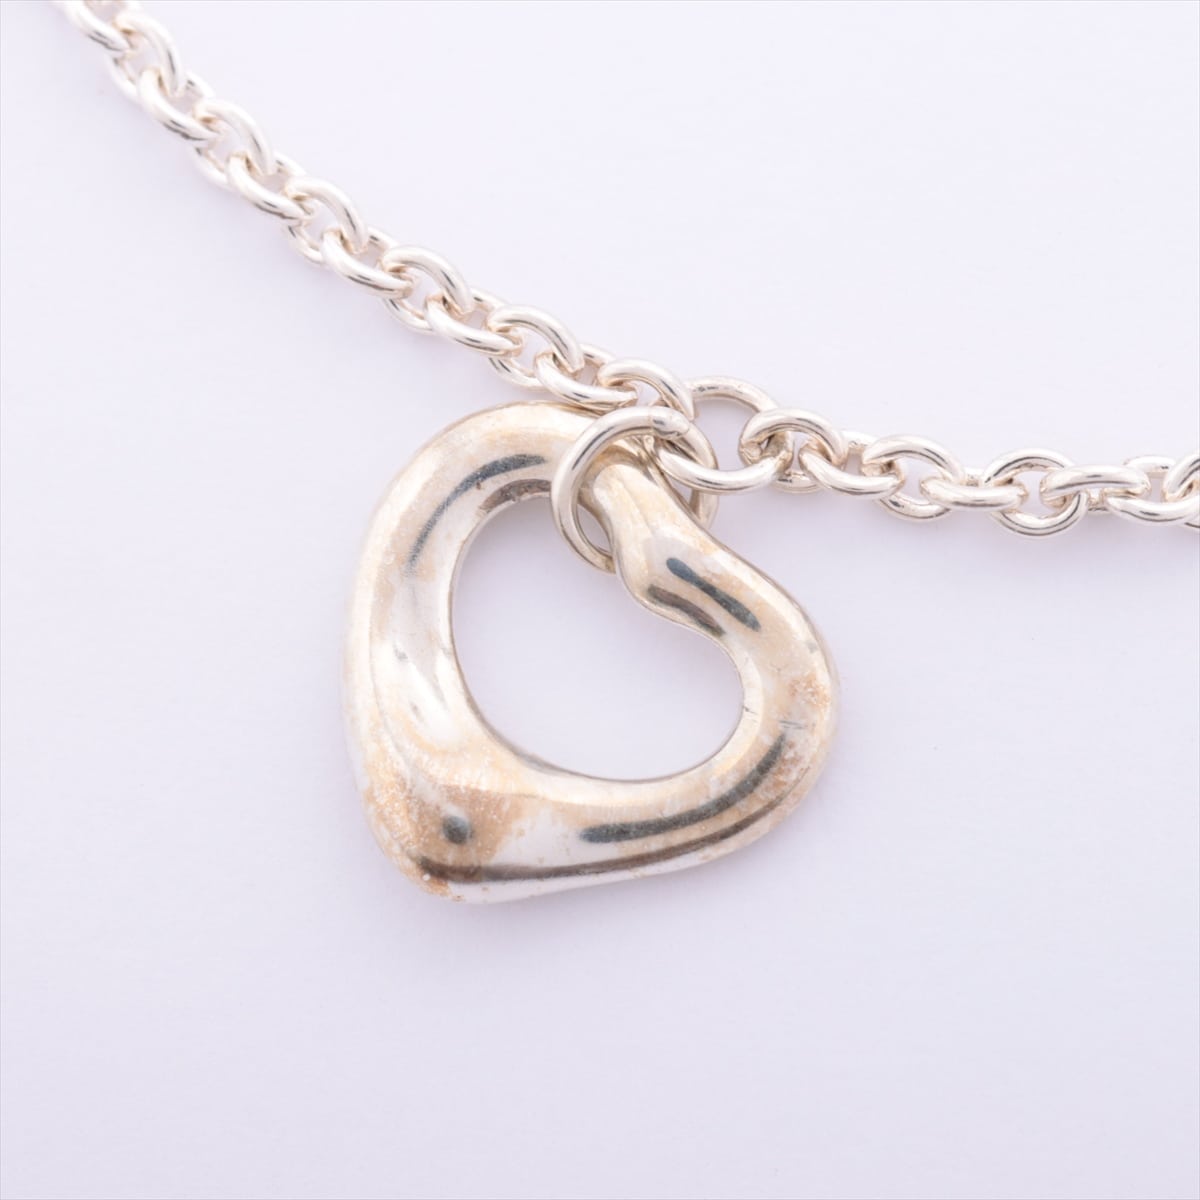 Tiffany Open Heart Bracelet 925 2.5g Silver